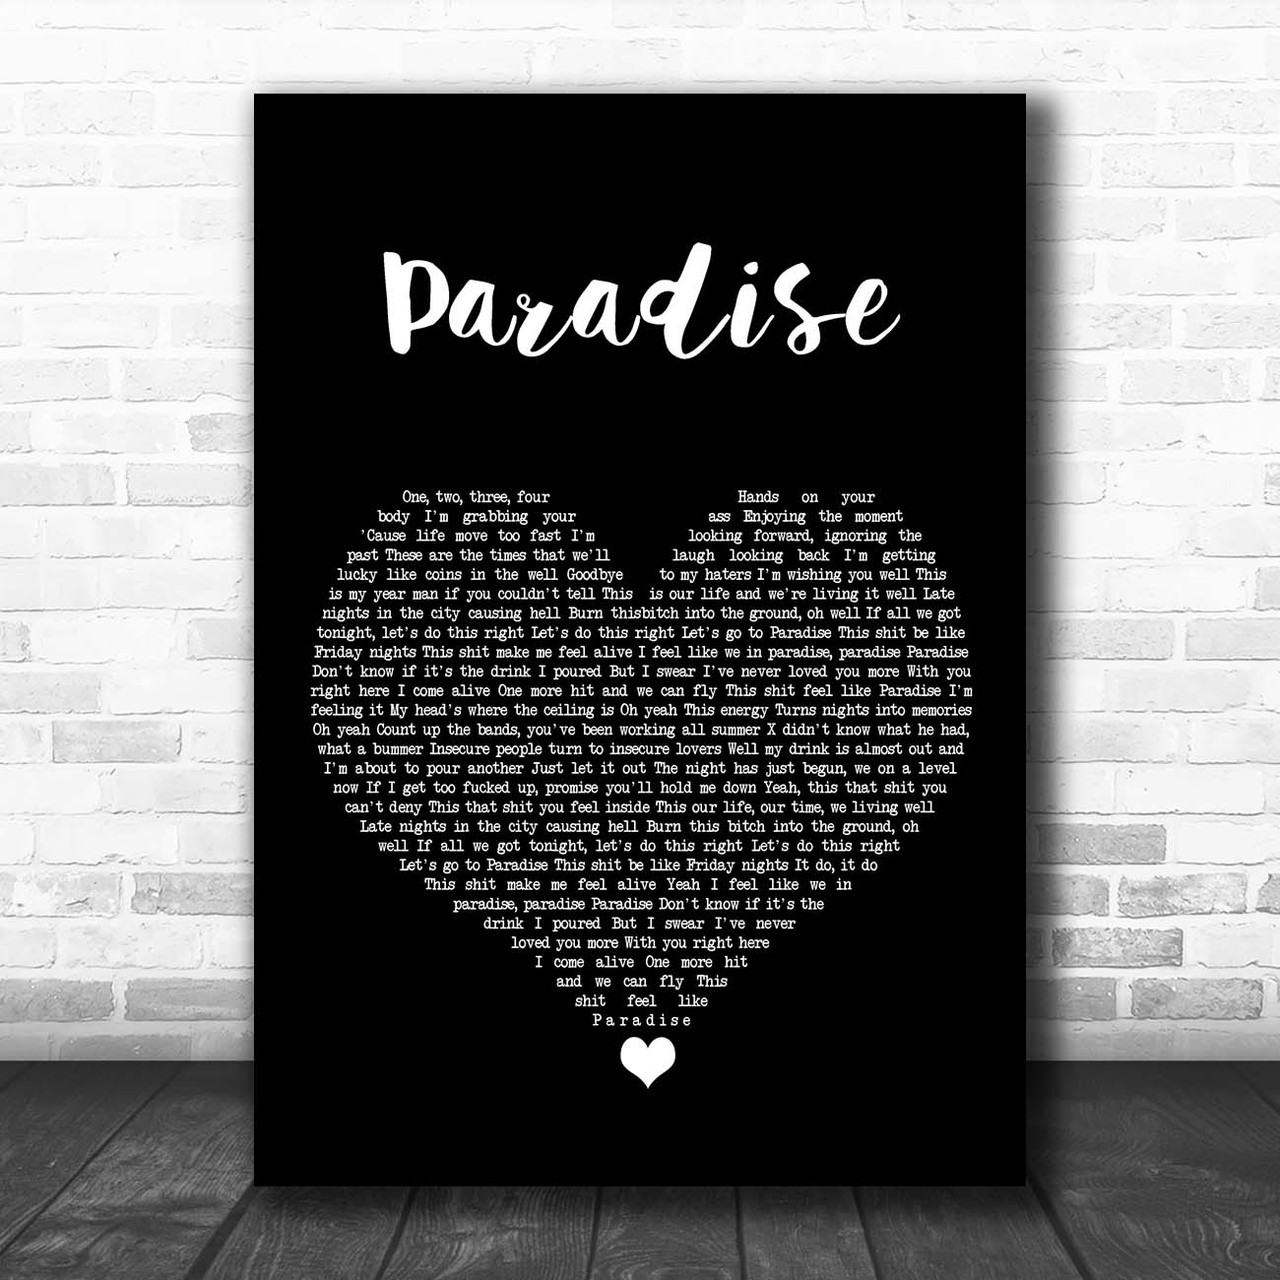 Bazzi – Paradise Lyrics